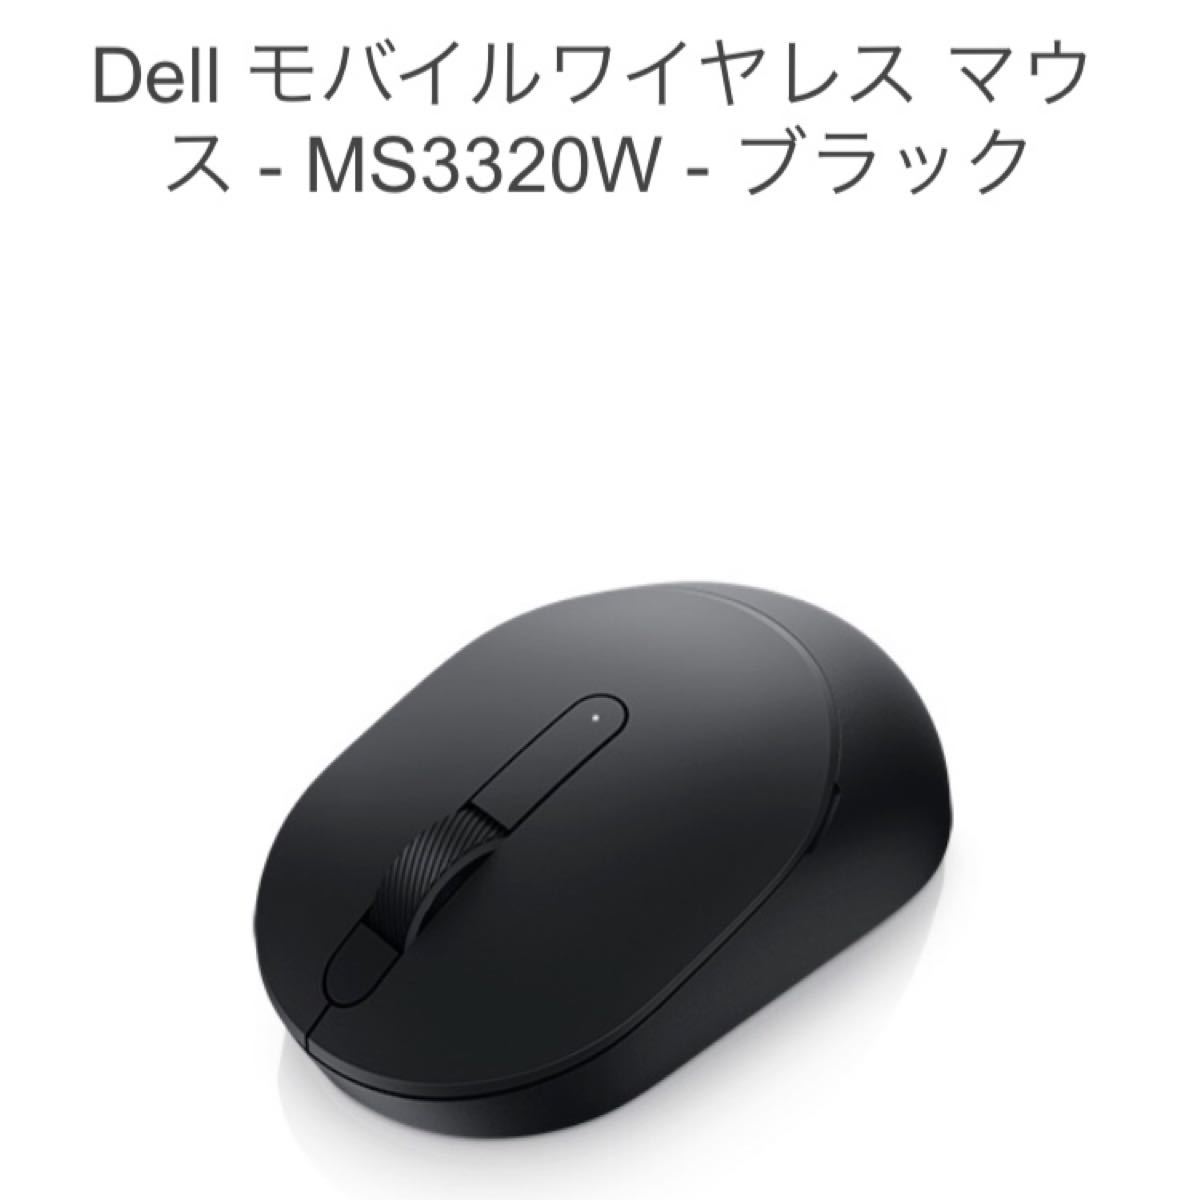 DELL ワイヤレスマウス MS3320W ブラック